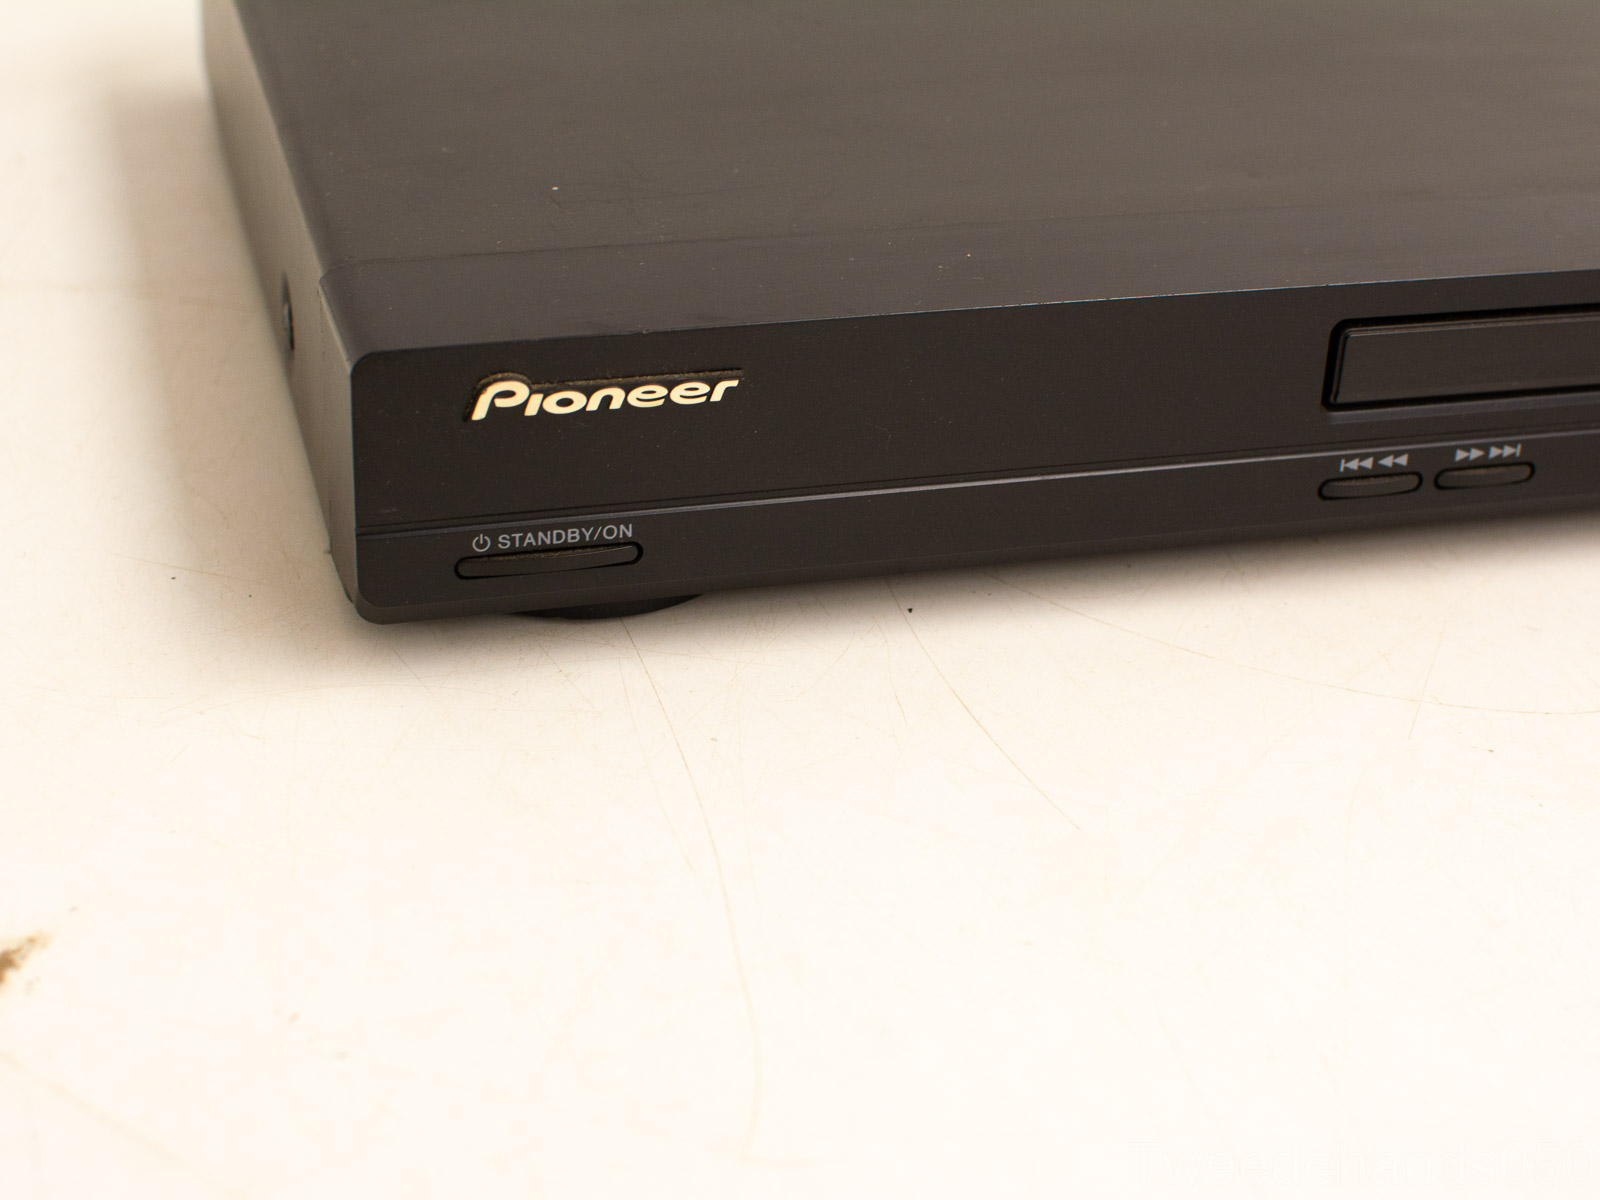 neerhalen Picknicken landelijk Pioneer dvd speler DV-360 28019